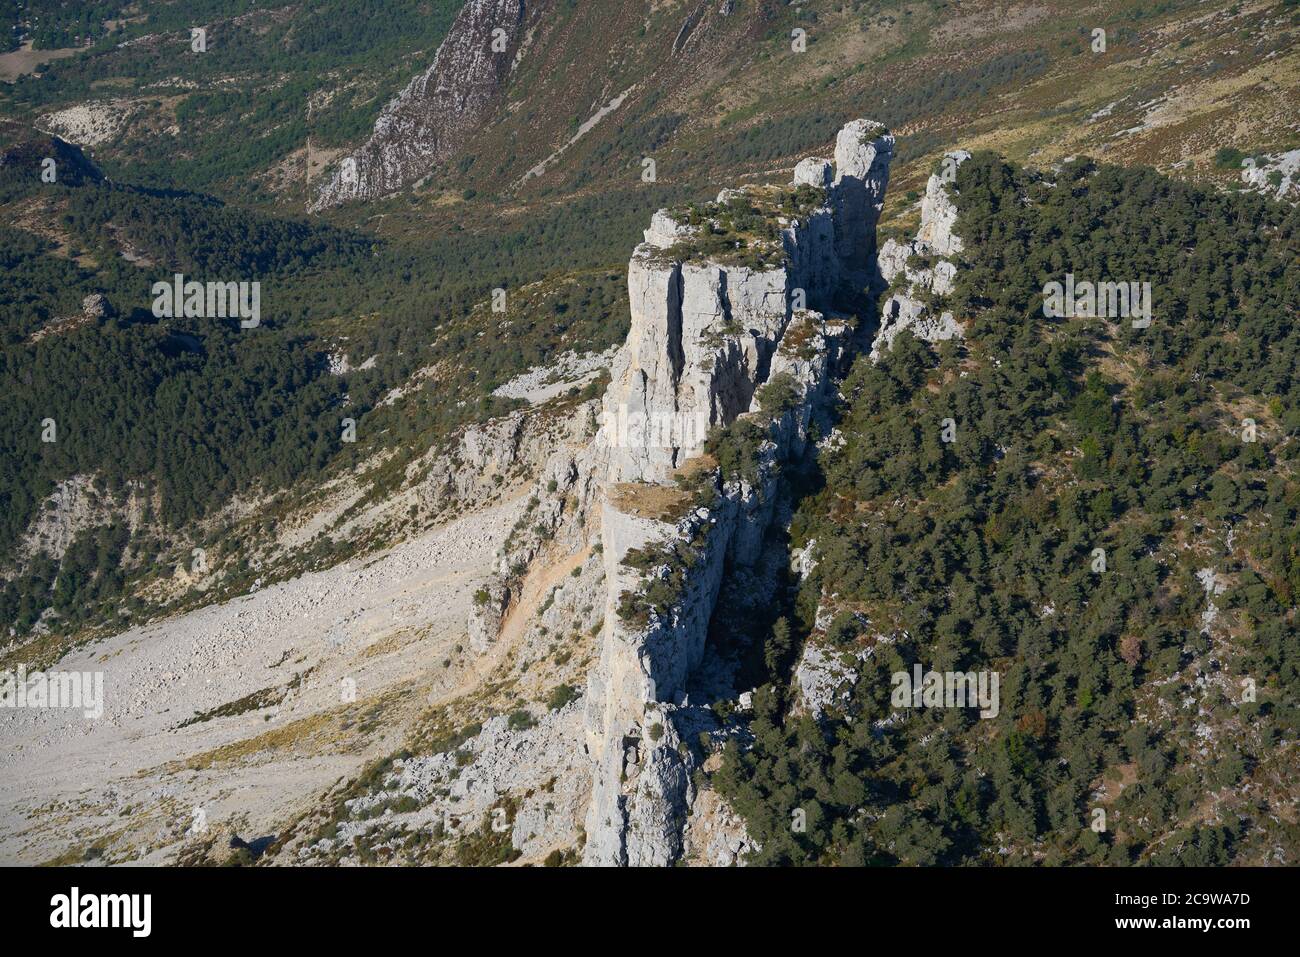 VISTA AEREA. Massiccia roccia calcarea sull'orlo del collasso. Cadières de Brandis, Castellane, Alpes de Haute-Provence, Francia. Foto Stock